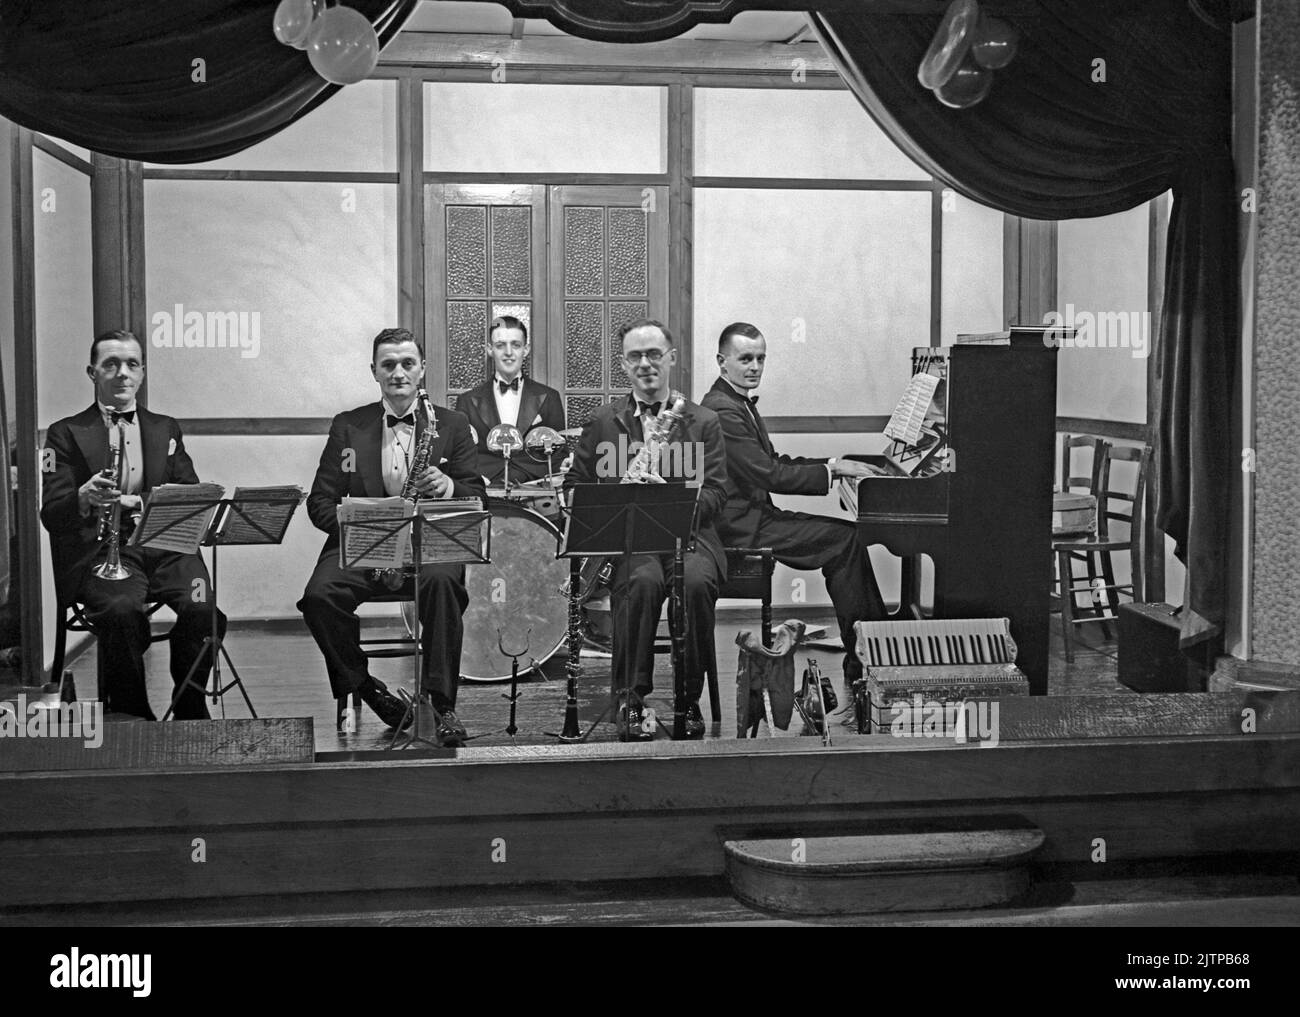 Eine britische fünfköpfige Tanzband, Jack Monks Jazz Band, auf der Bühne in Sutton, Surrey (heute ein Stadtteil von London), Großbritannien im Dezember 1937. Frühe Tanz- und Swing-Bands hatten ihre Blütezeit in Großbritannien während der Jahre 1920s–30s. Bands spielten in Tanzsälen und Hotelballsälen. Sie spielten melodische, gute-Zeit-Musik und einzelne Spieler spielten in mehreren Bands. Dieses Bild stammt aus einem alten Glas-Negativ – einem Vintage-Foto aus dem Jahr 1930s. Stockfoto